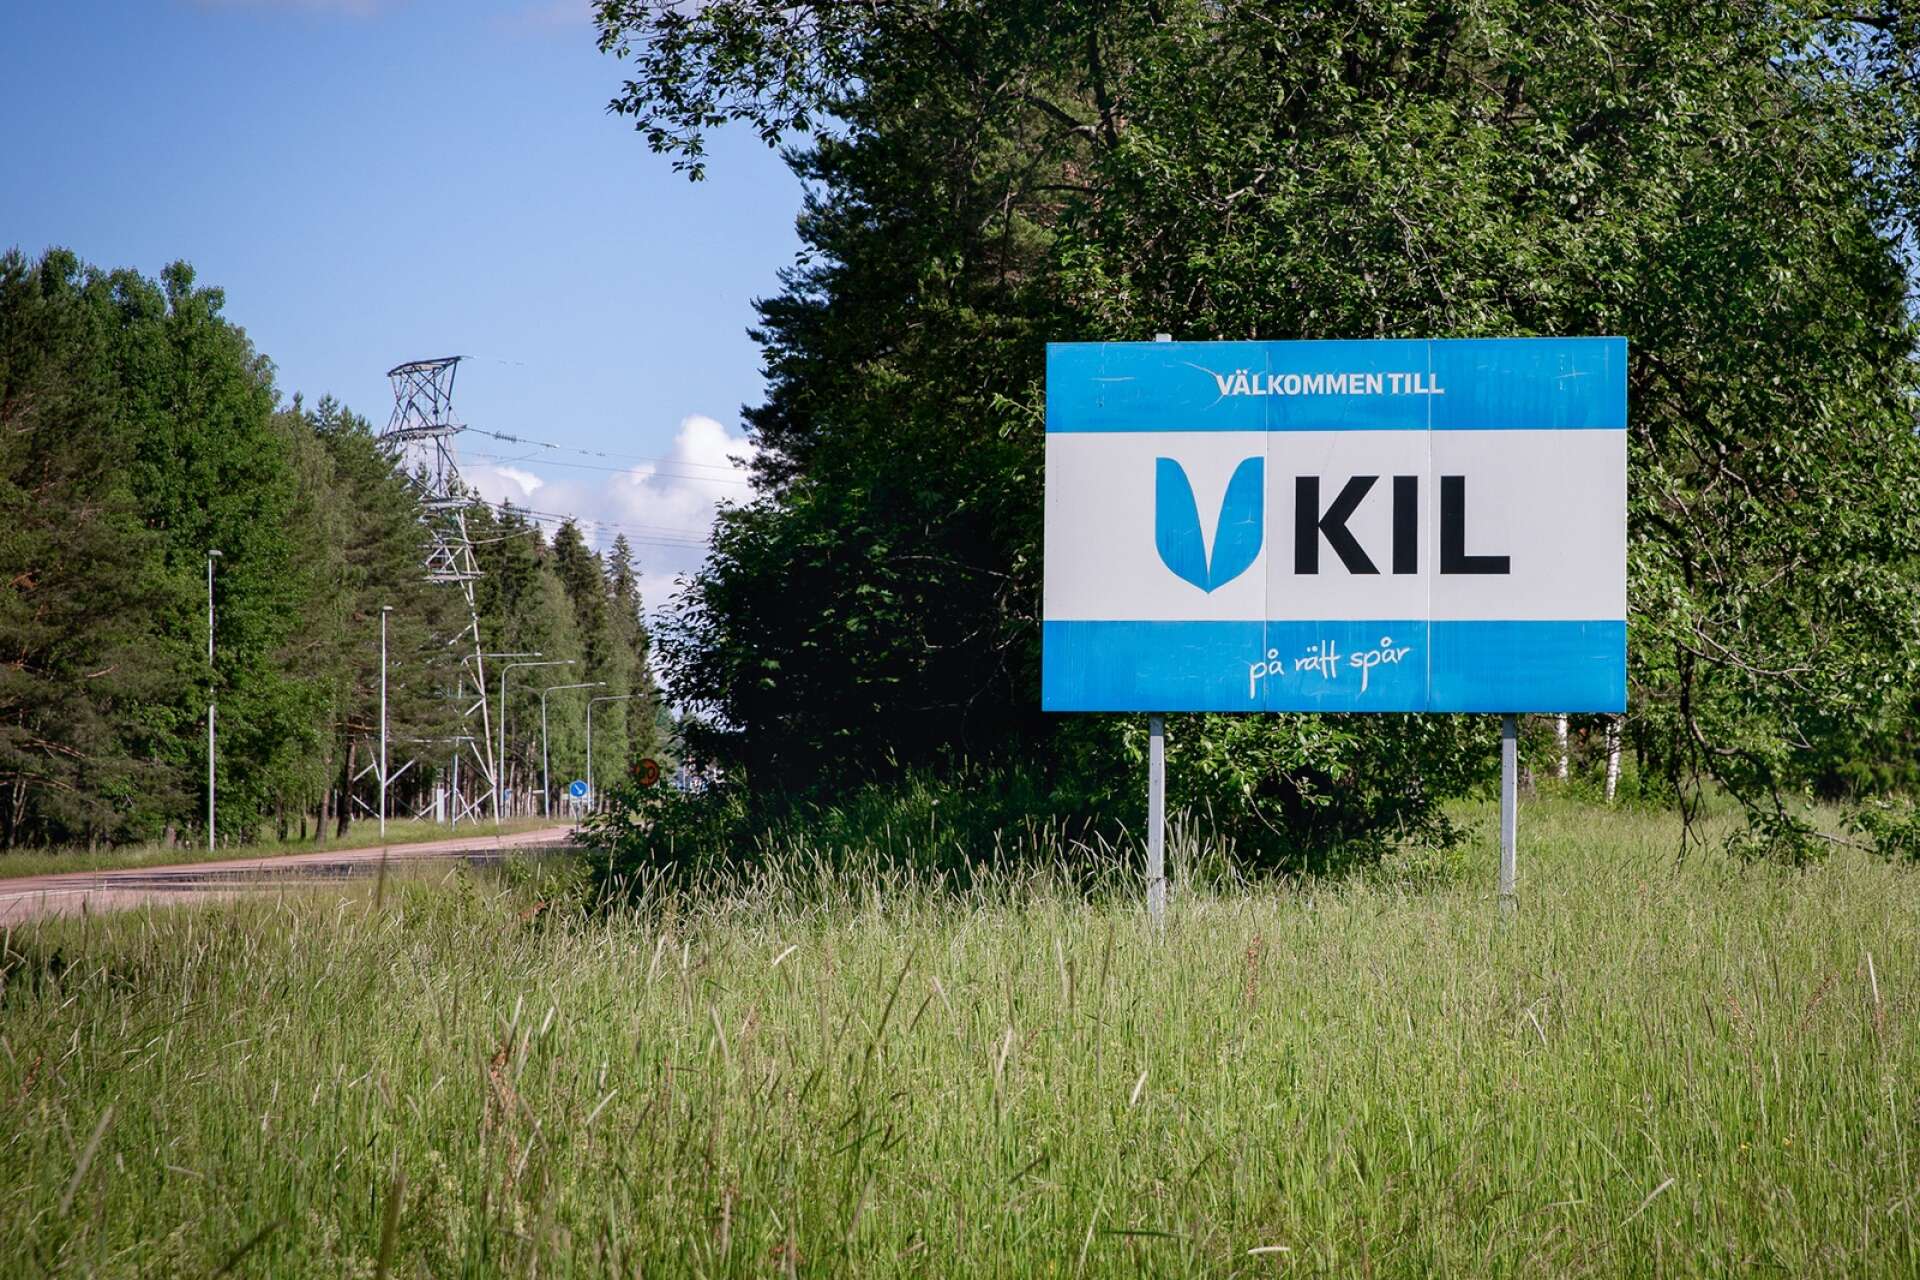 GENREBILD. Kils kommun. Skylt. ”På rätt spår”, lyder Kils slogan. Men kommunens vägar säger något helt annat – 60 procent av vägnätet är undermåligt.